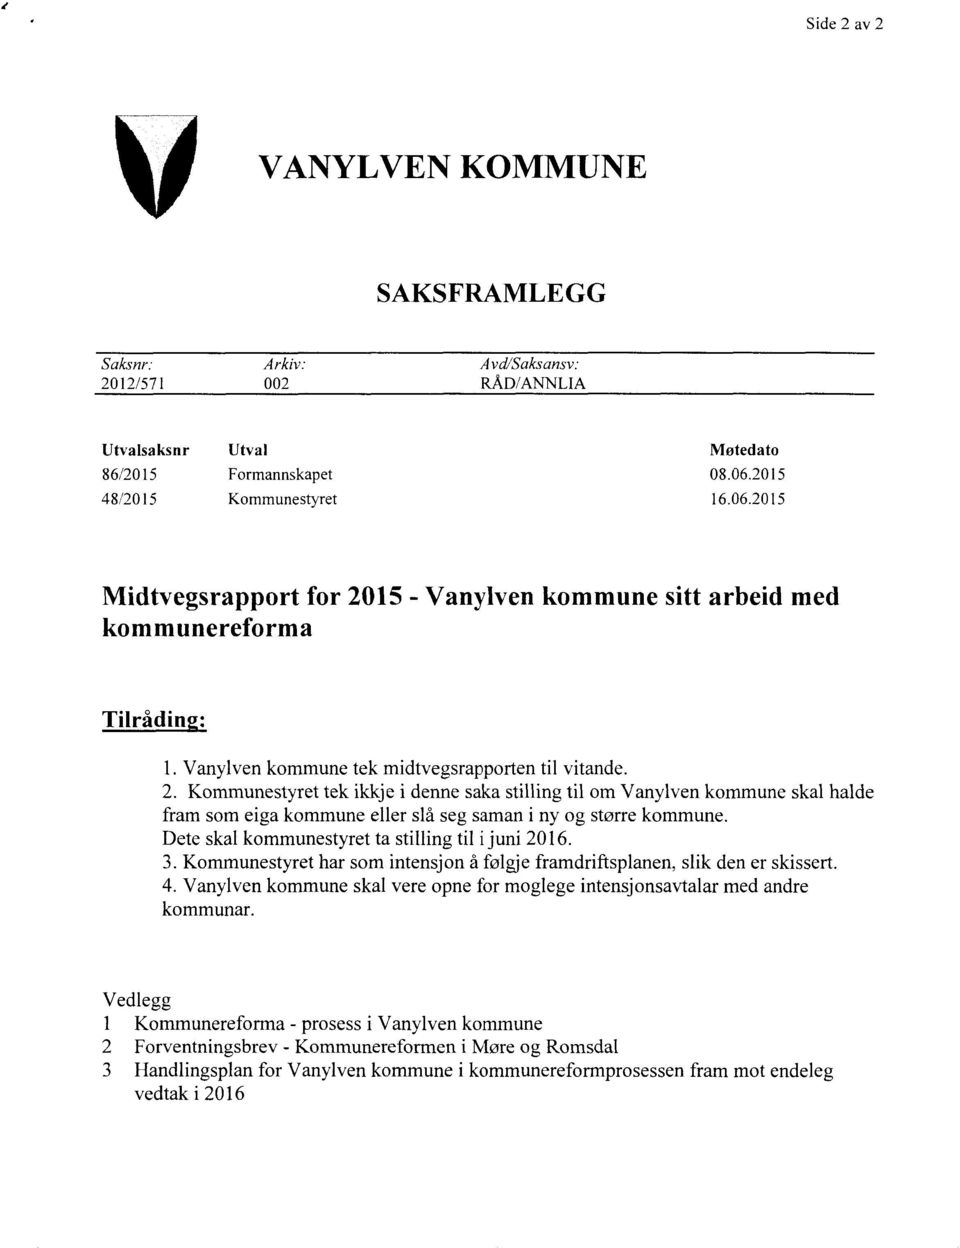 Vanylven kommune tek midtvegsrapporten til vitande. Dete skal kommunestyret ta stilling til i juni 2016. 4.